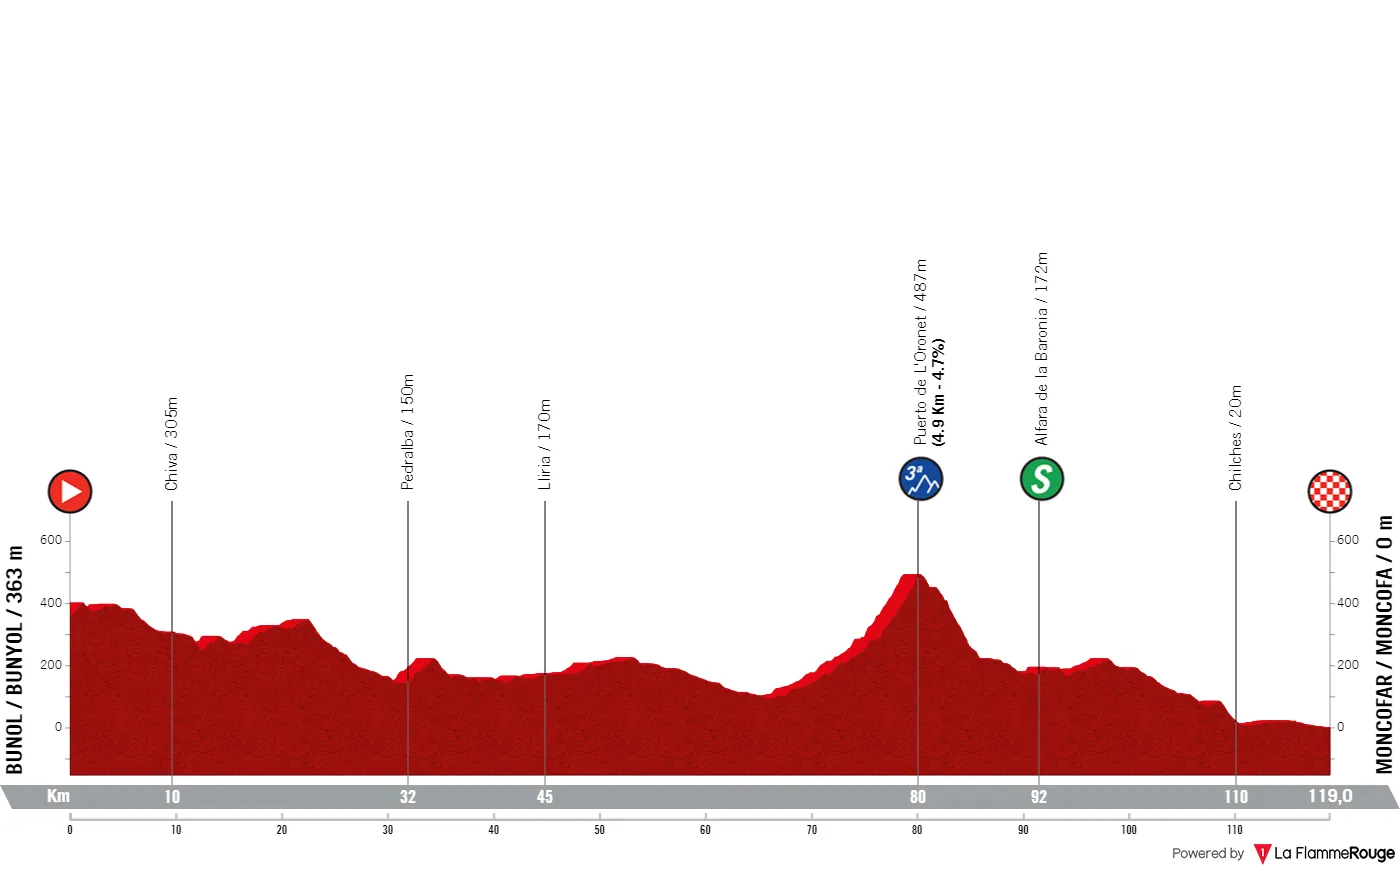 Etappe 2: Bunyol - Moncofa, 119 Kilometer schematisches Profil&amp;lt;br&amp;gt;